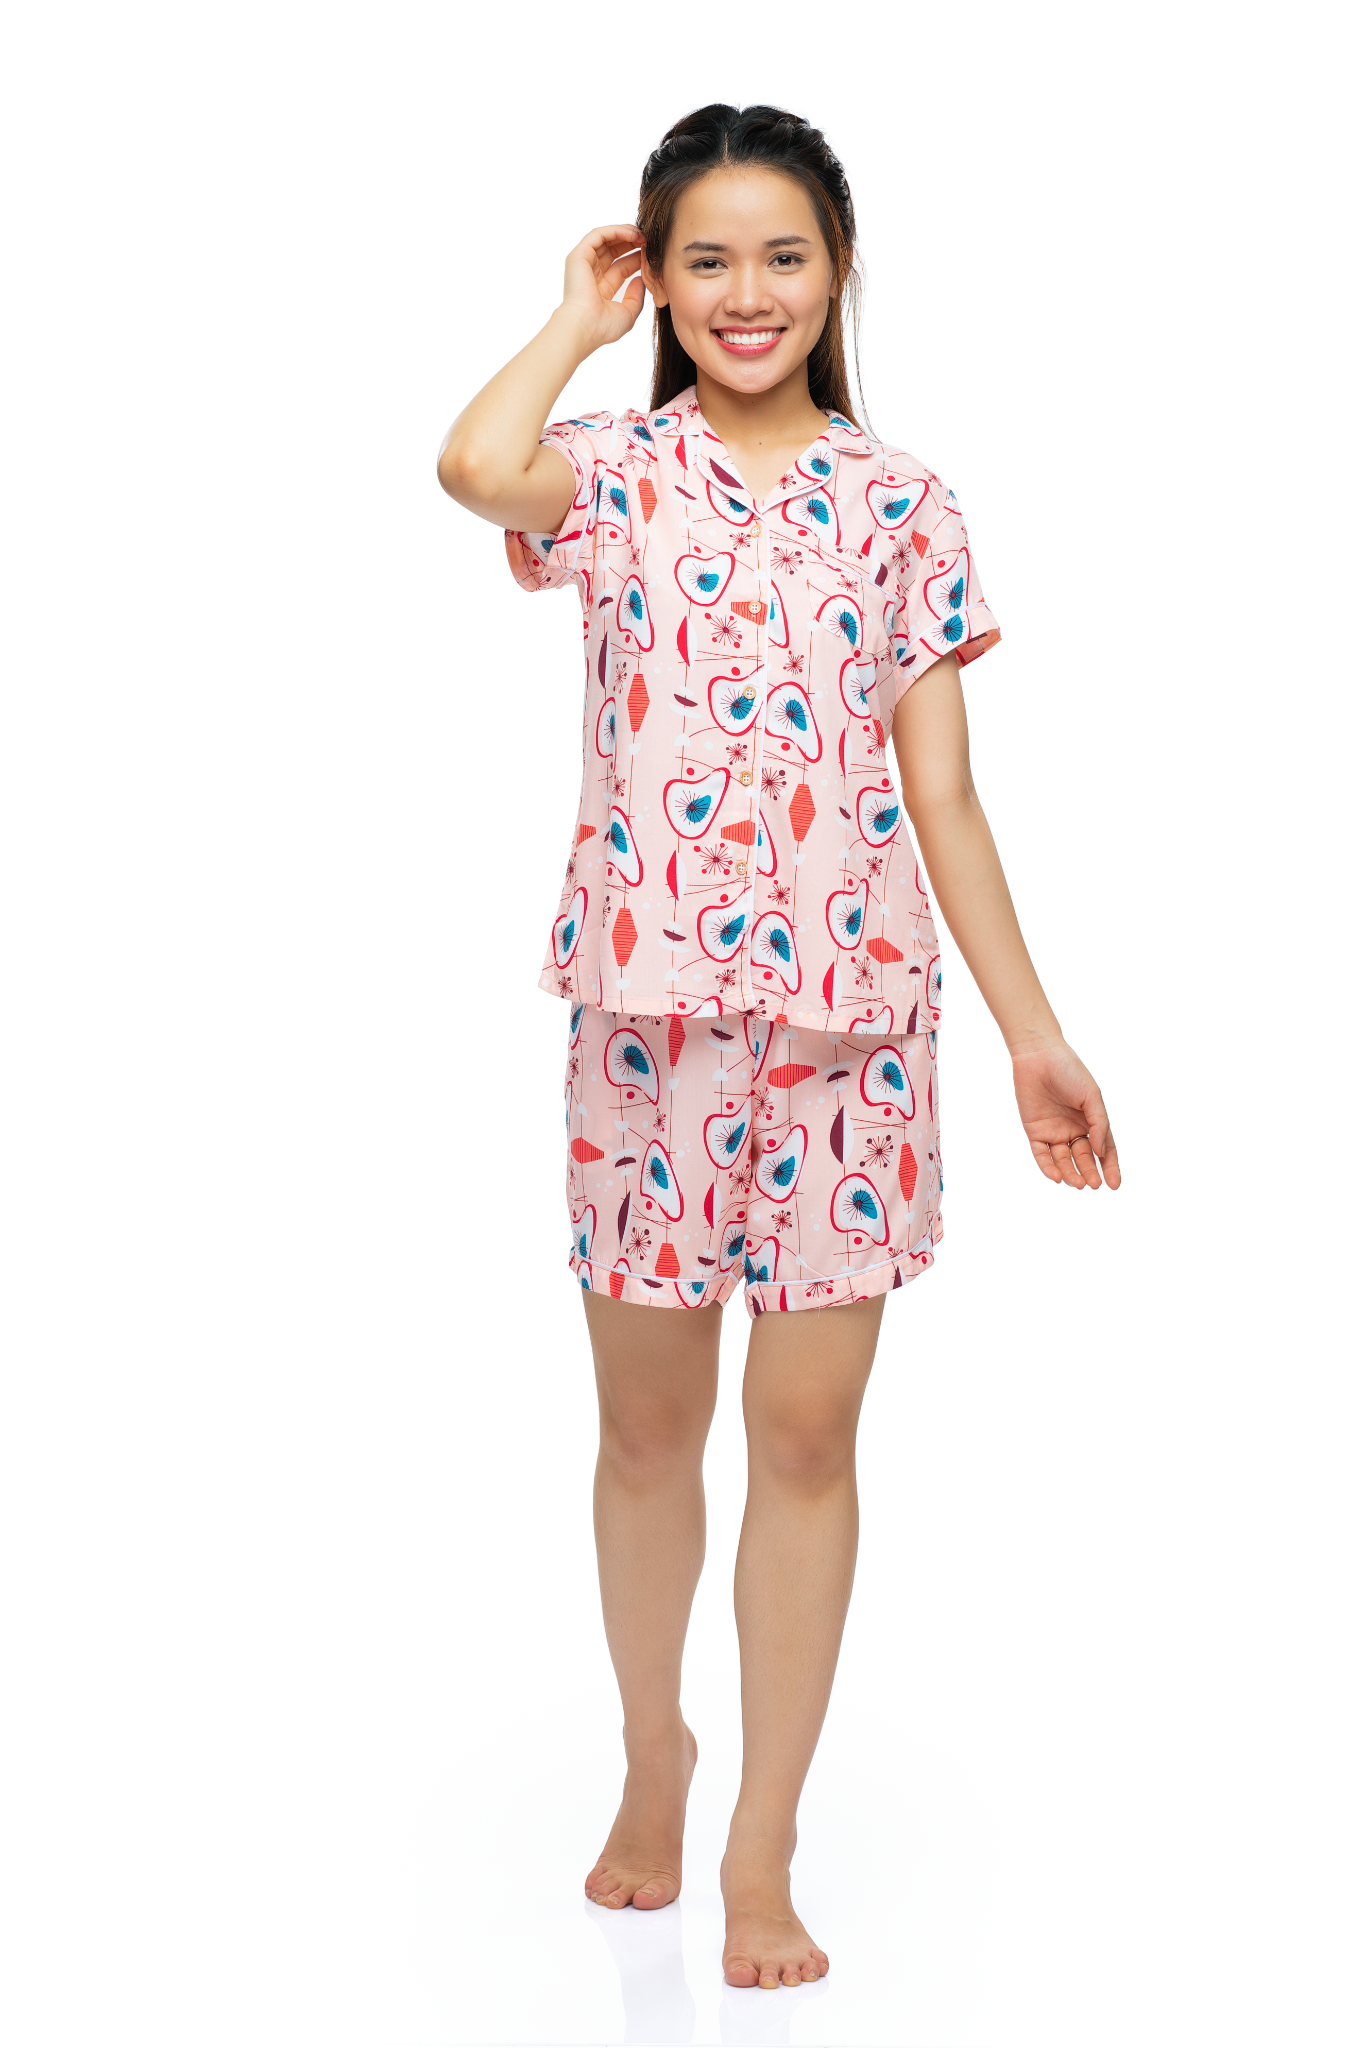  Đồ bộ Pijama quần ngắn áo ngắn tay họa tiết quả bơ - A43112302 